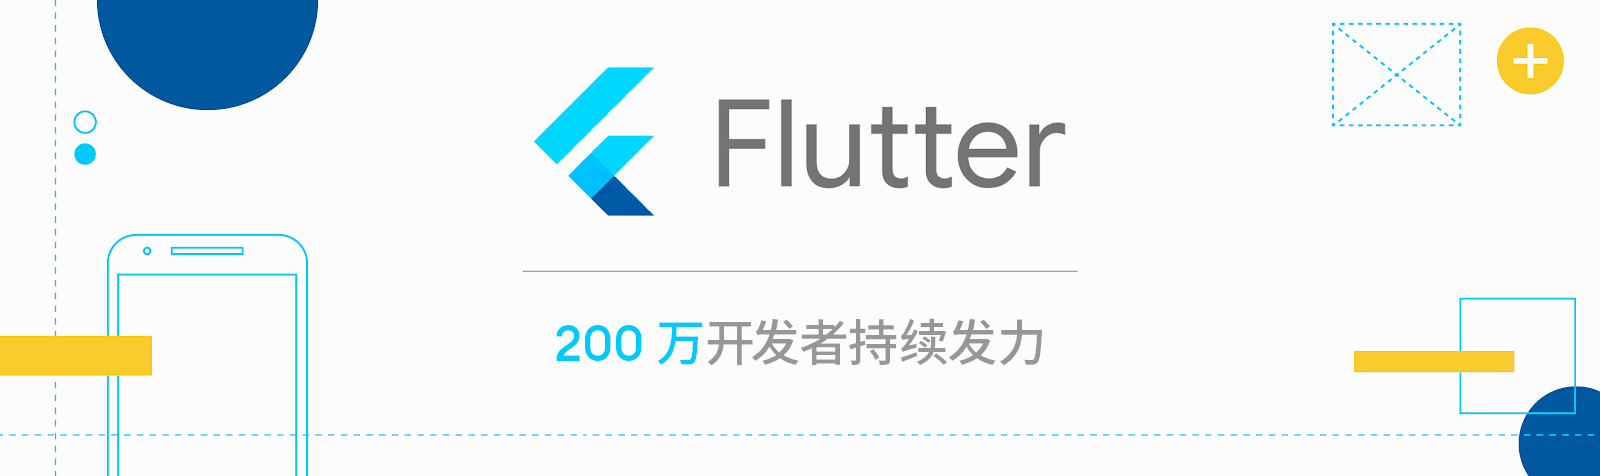 flutter-developers